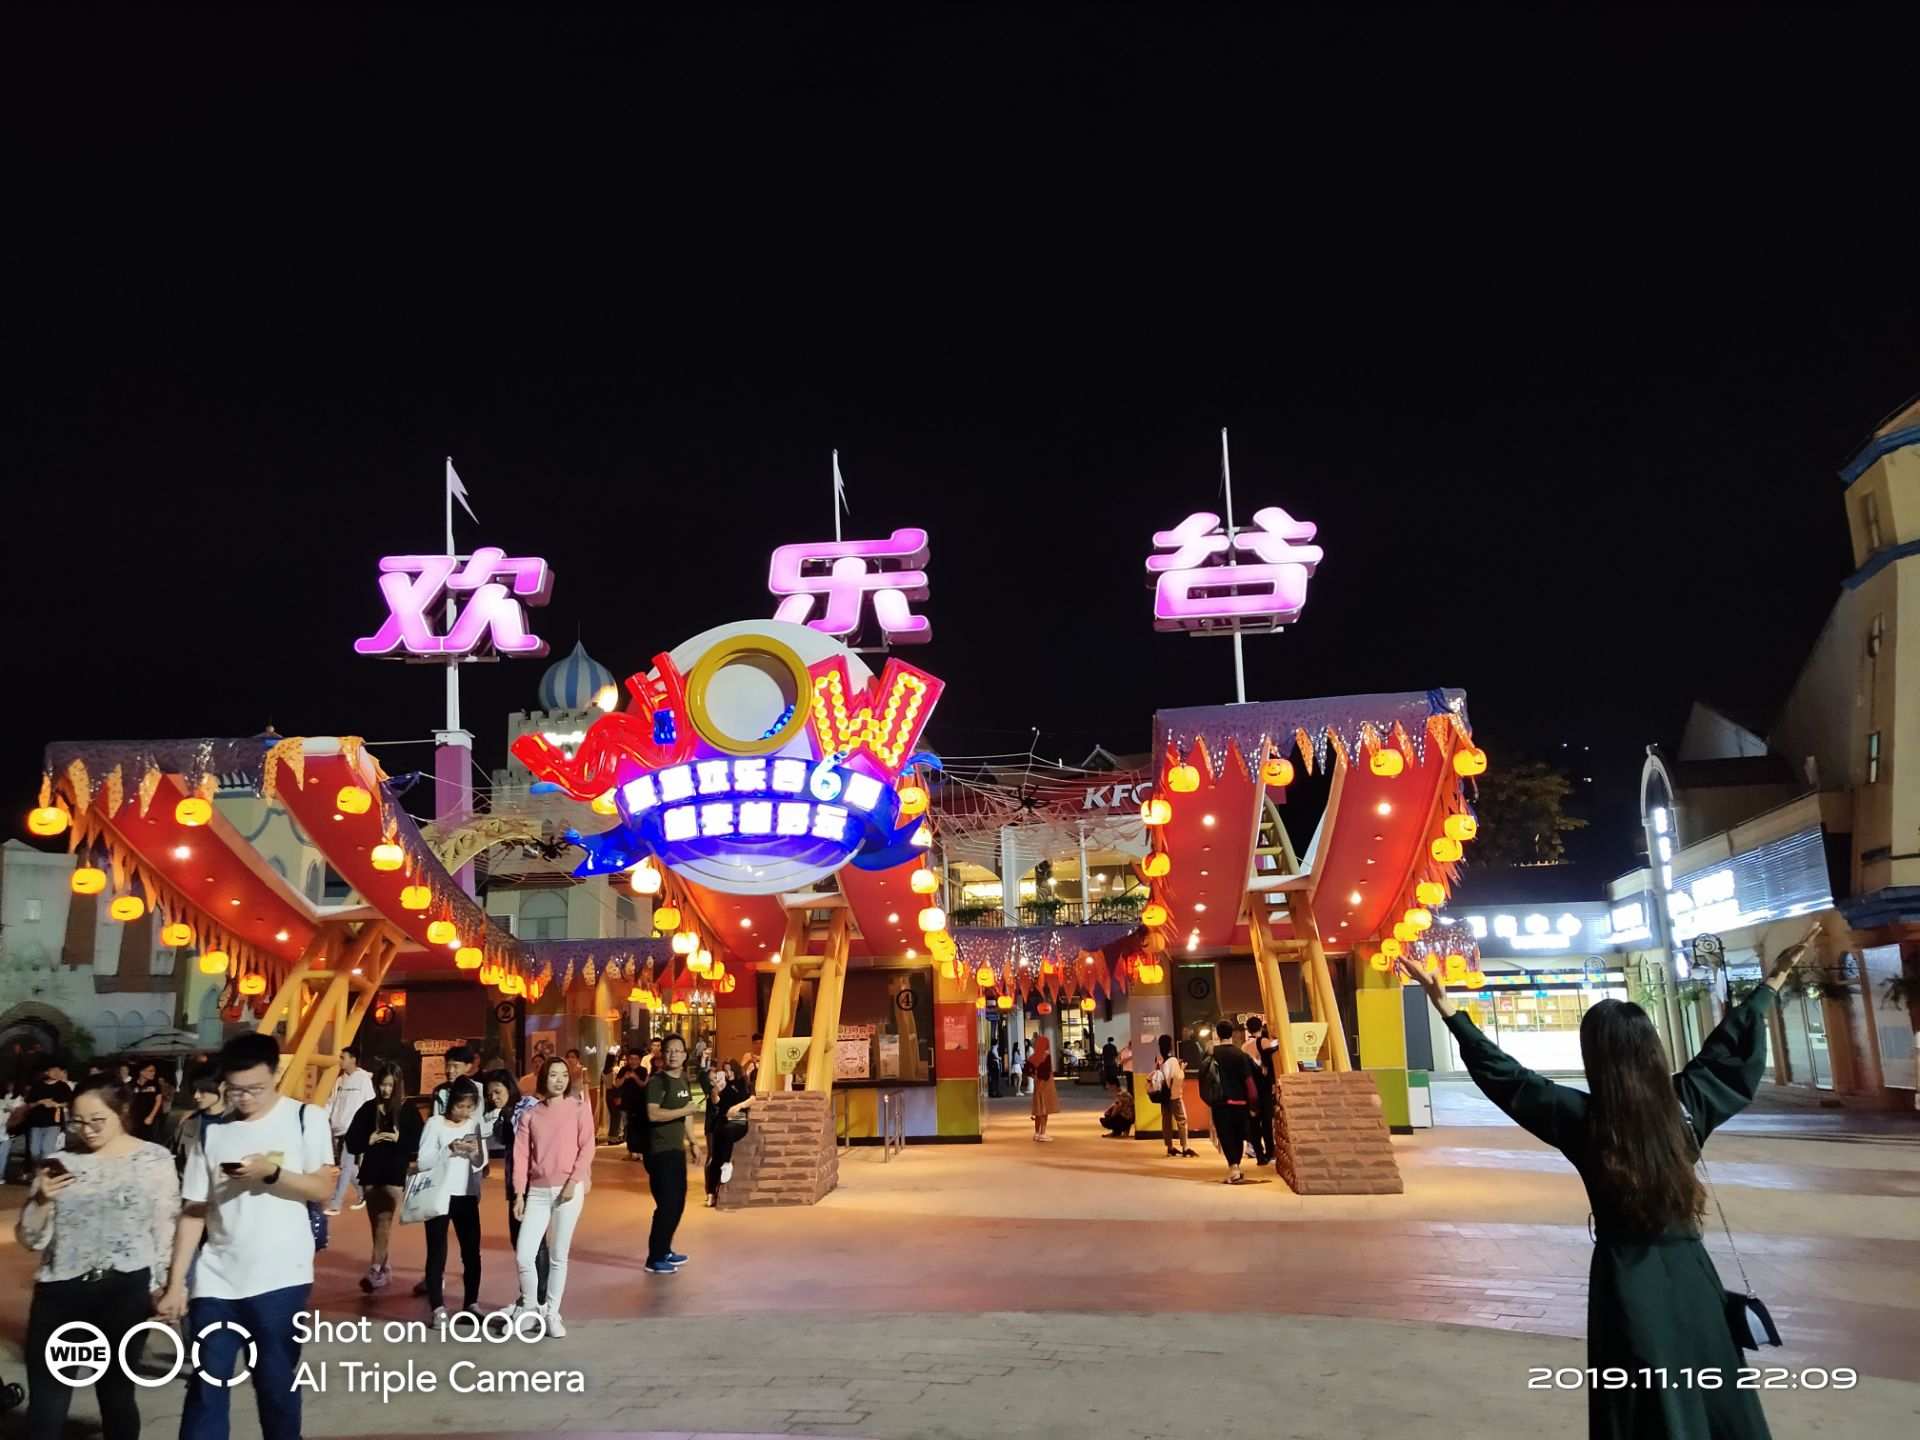 【携程攻略】深圳深圳欢乐谷景点,今年去三次欢乐谷了 每一次都有不同的趣味